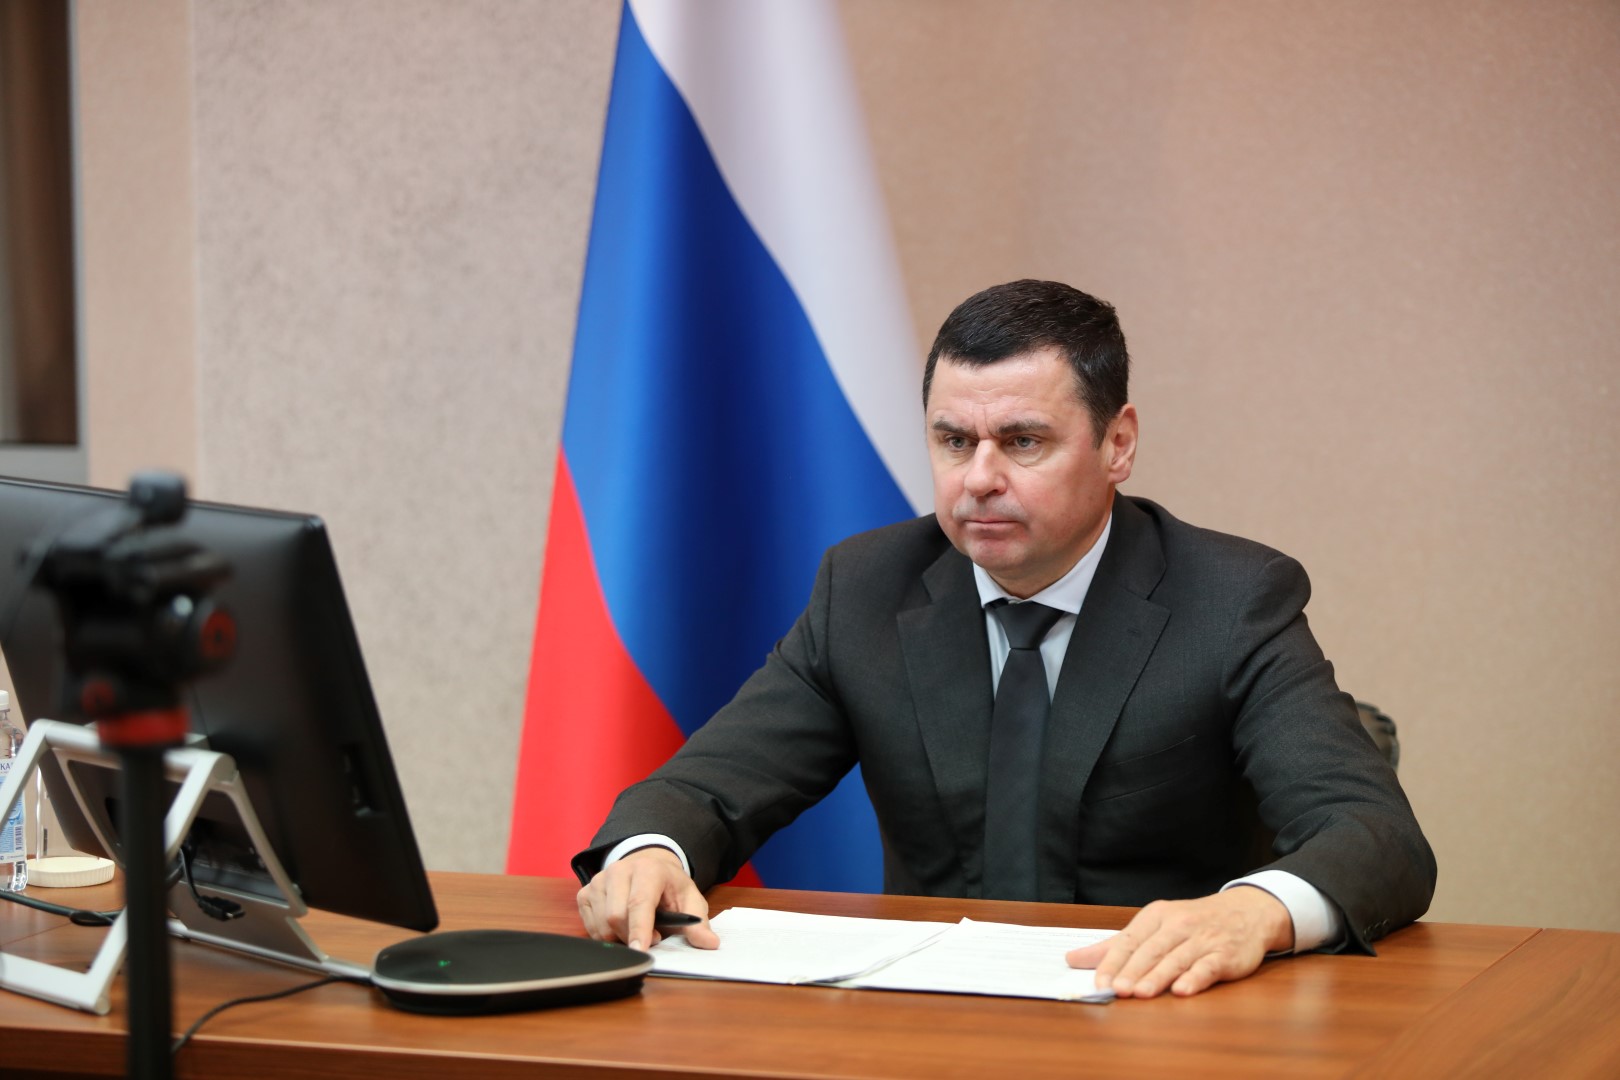 Ярославский губернатор открыл вебинар «Цифровое лидерство»